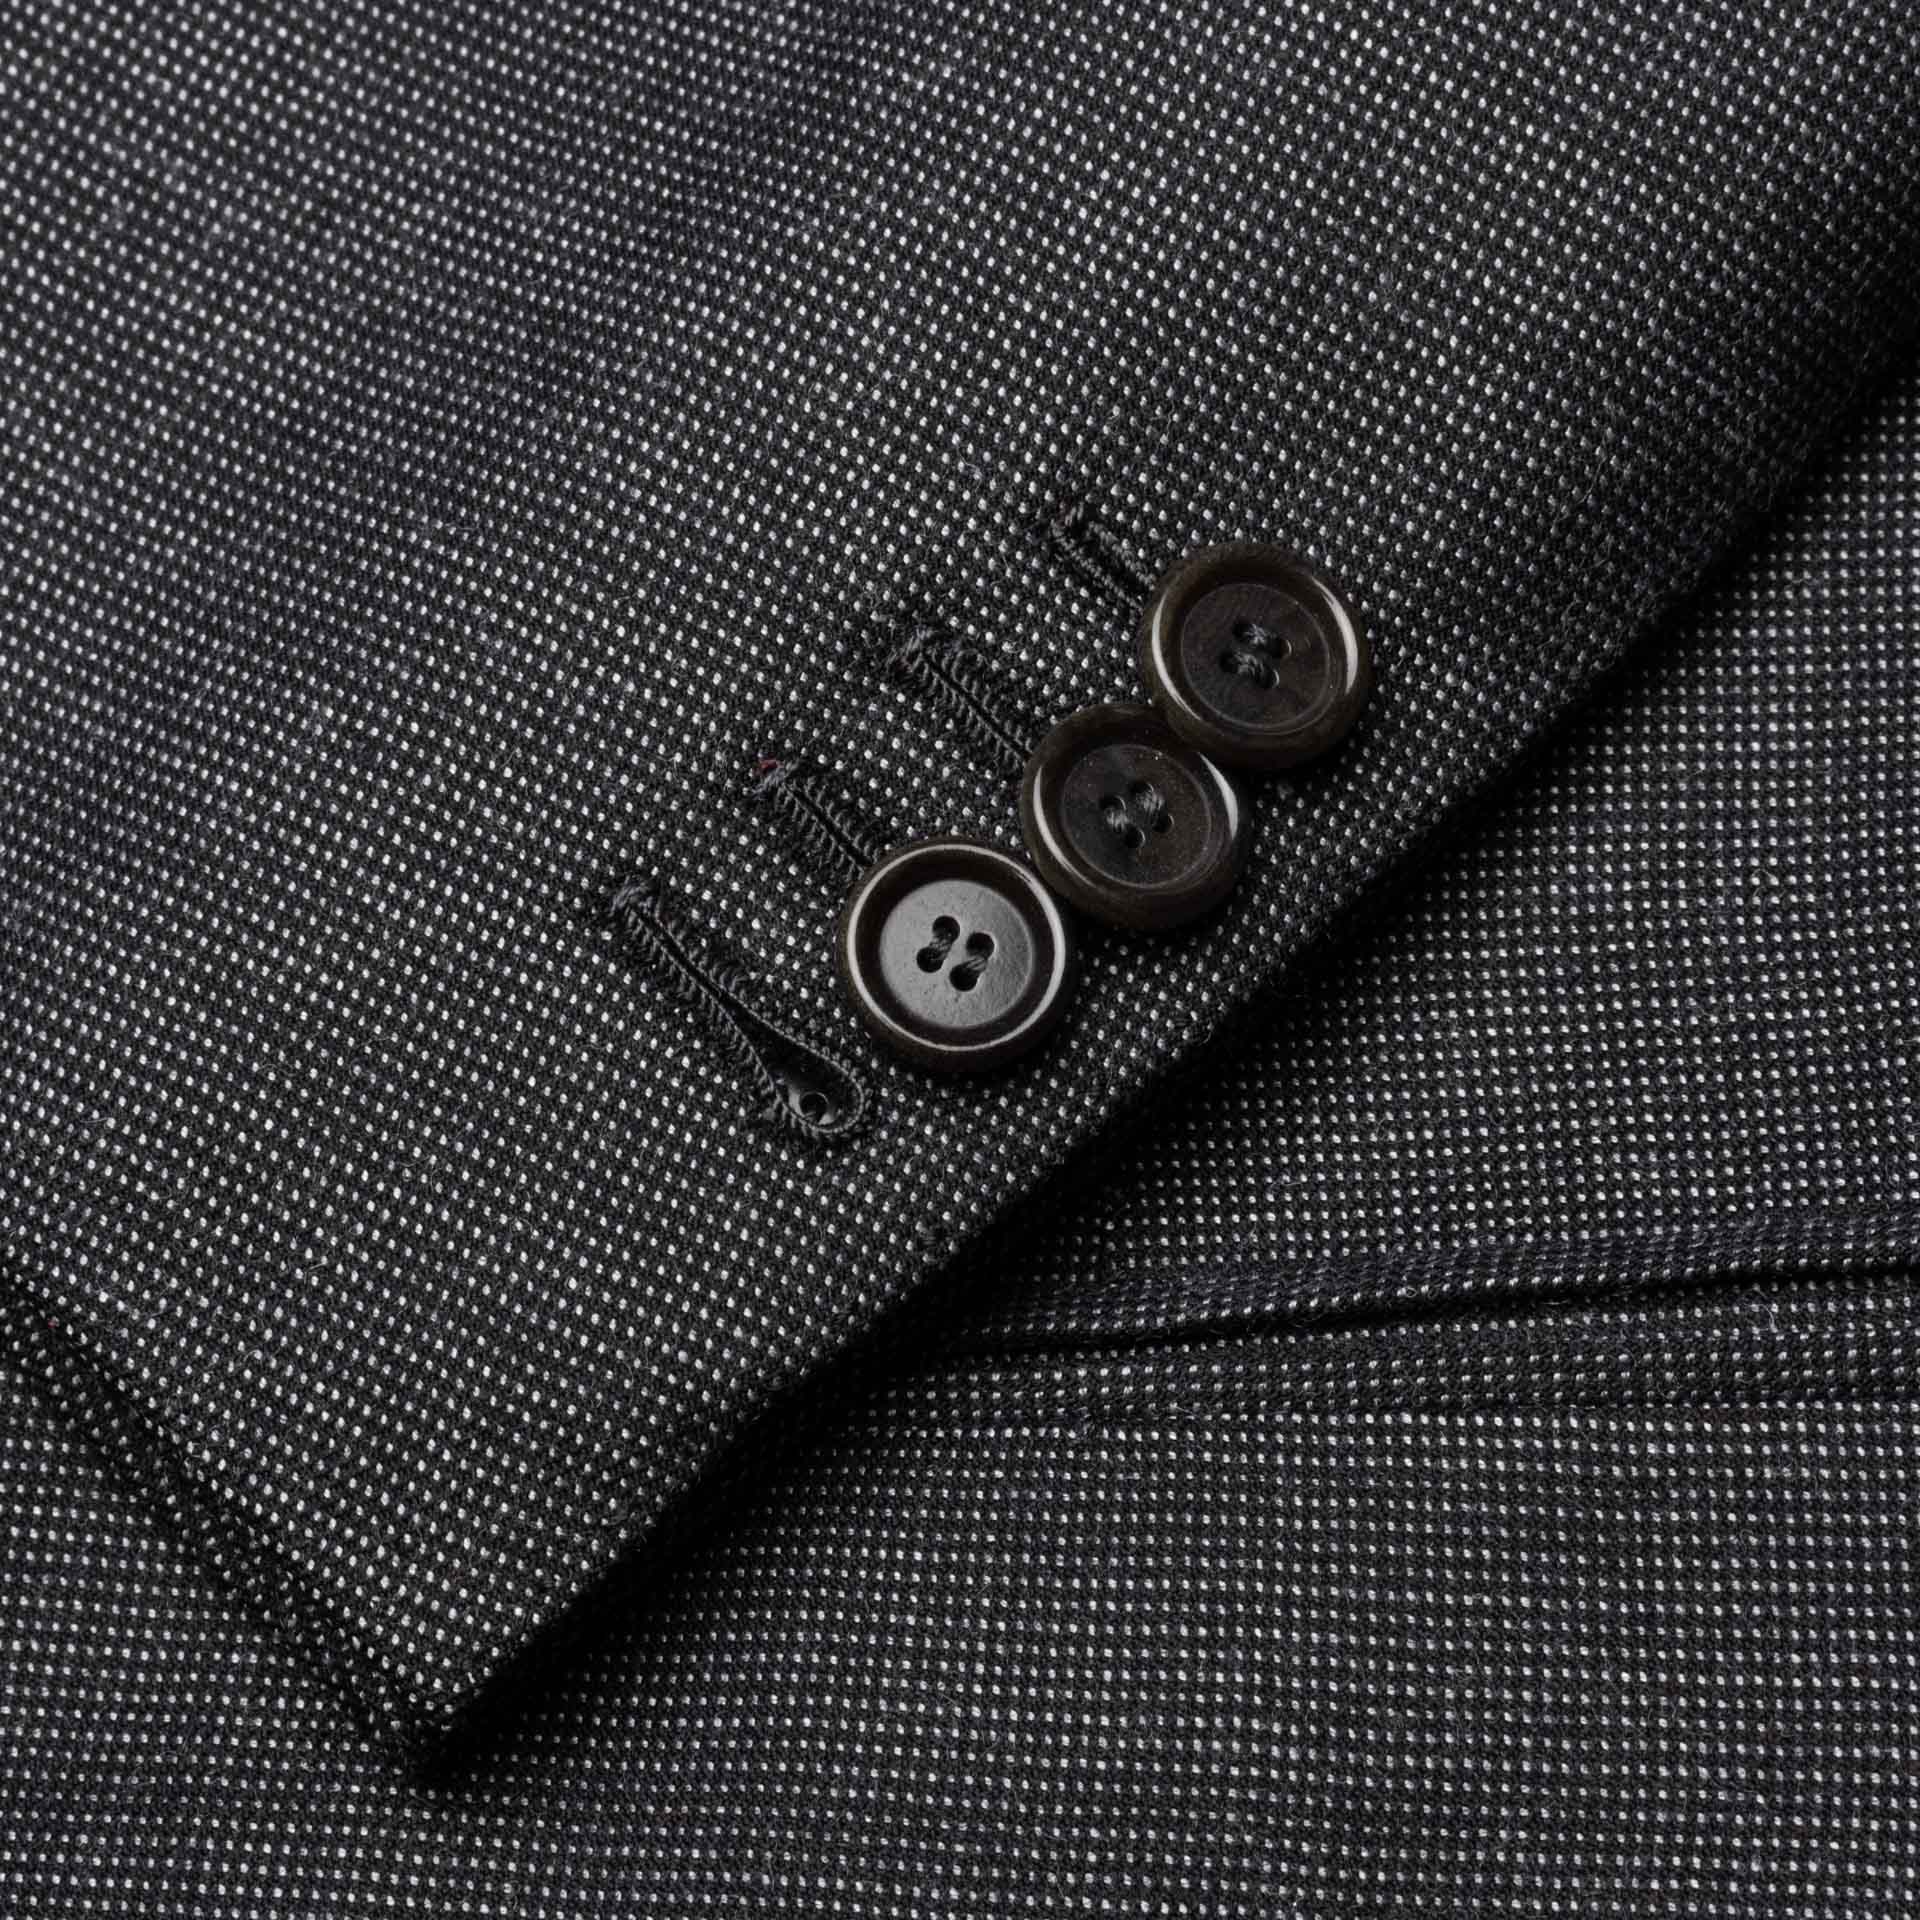 CESARE ATTOLINI for M. BARDELLI Gray Cashmere Wool Super 130's Jacket 50 NEW 40 CESARE ATTOLINI